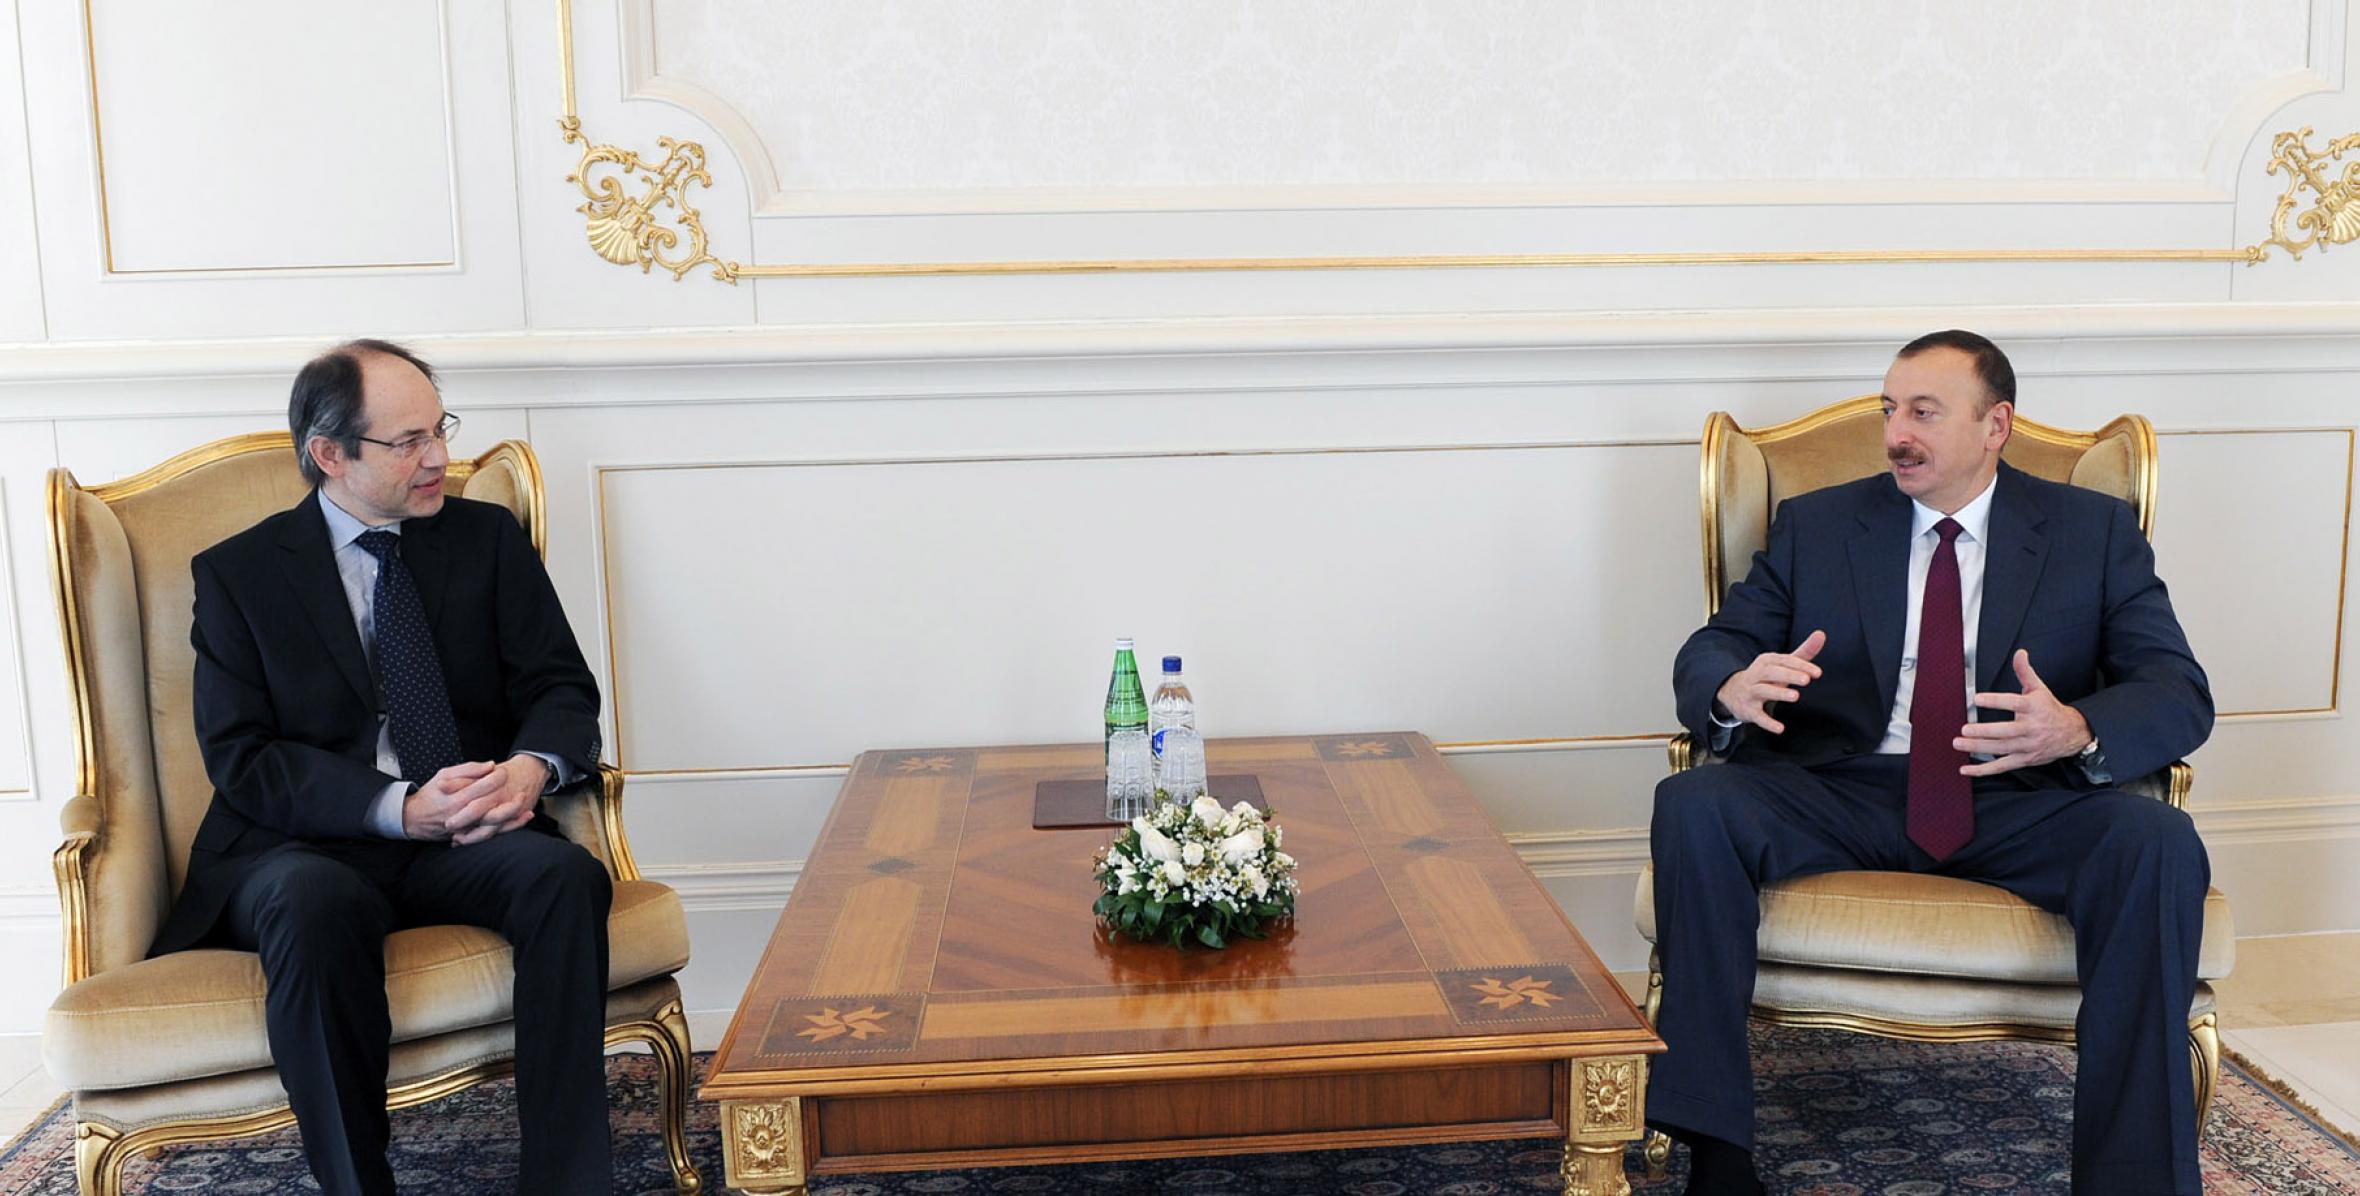 Ильхам Алиев принял верительные грамоты новоназначенного посла Королевства Бельгии в Азербайджане